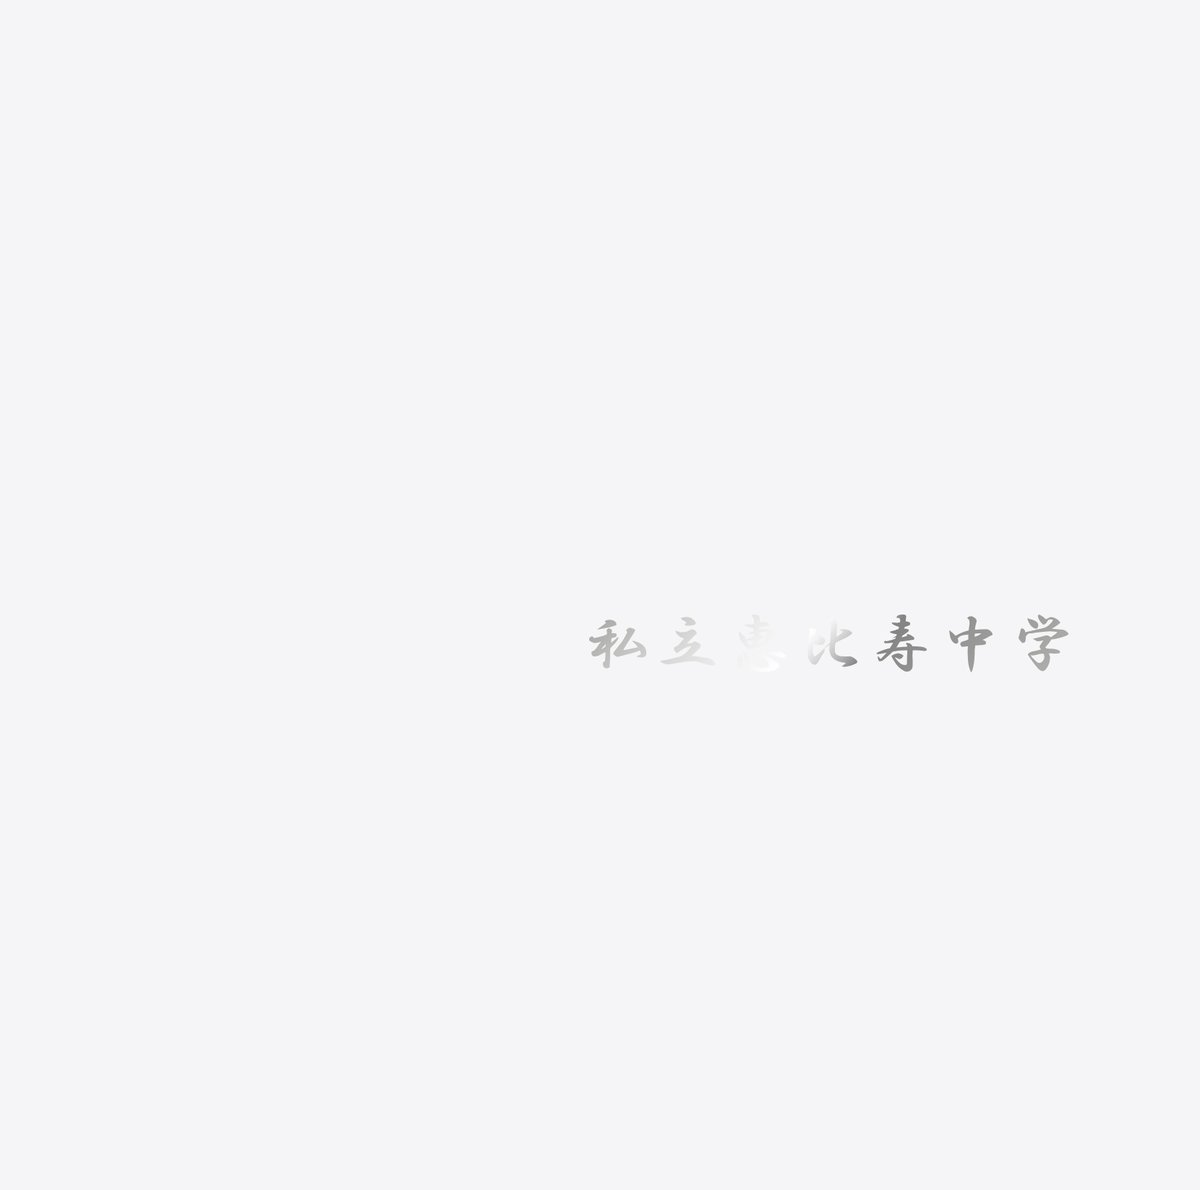 『私立恵比寿中学 - エビ中出席番号の歌 その3』収録の『Major Debut 10th Anniversary Album 中吉』ジャケット